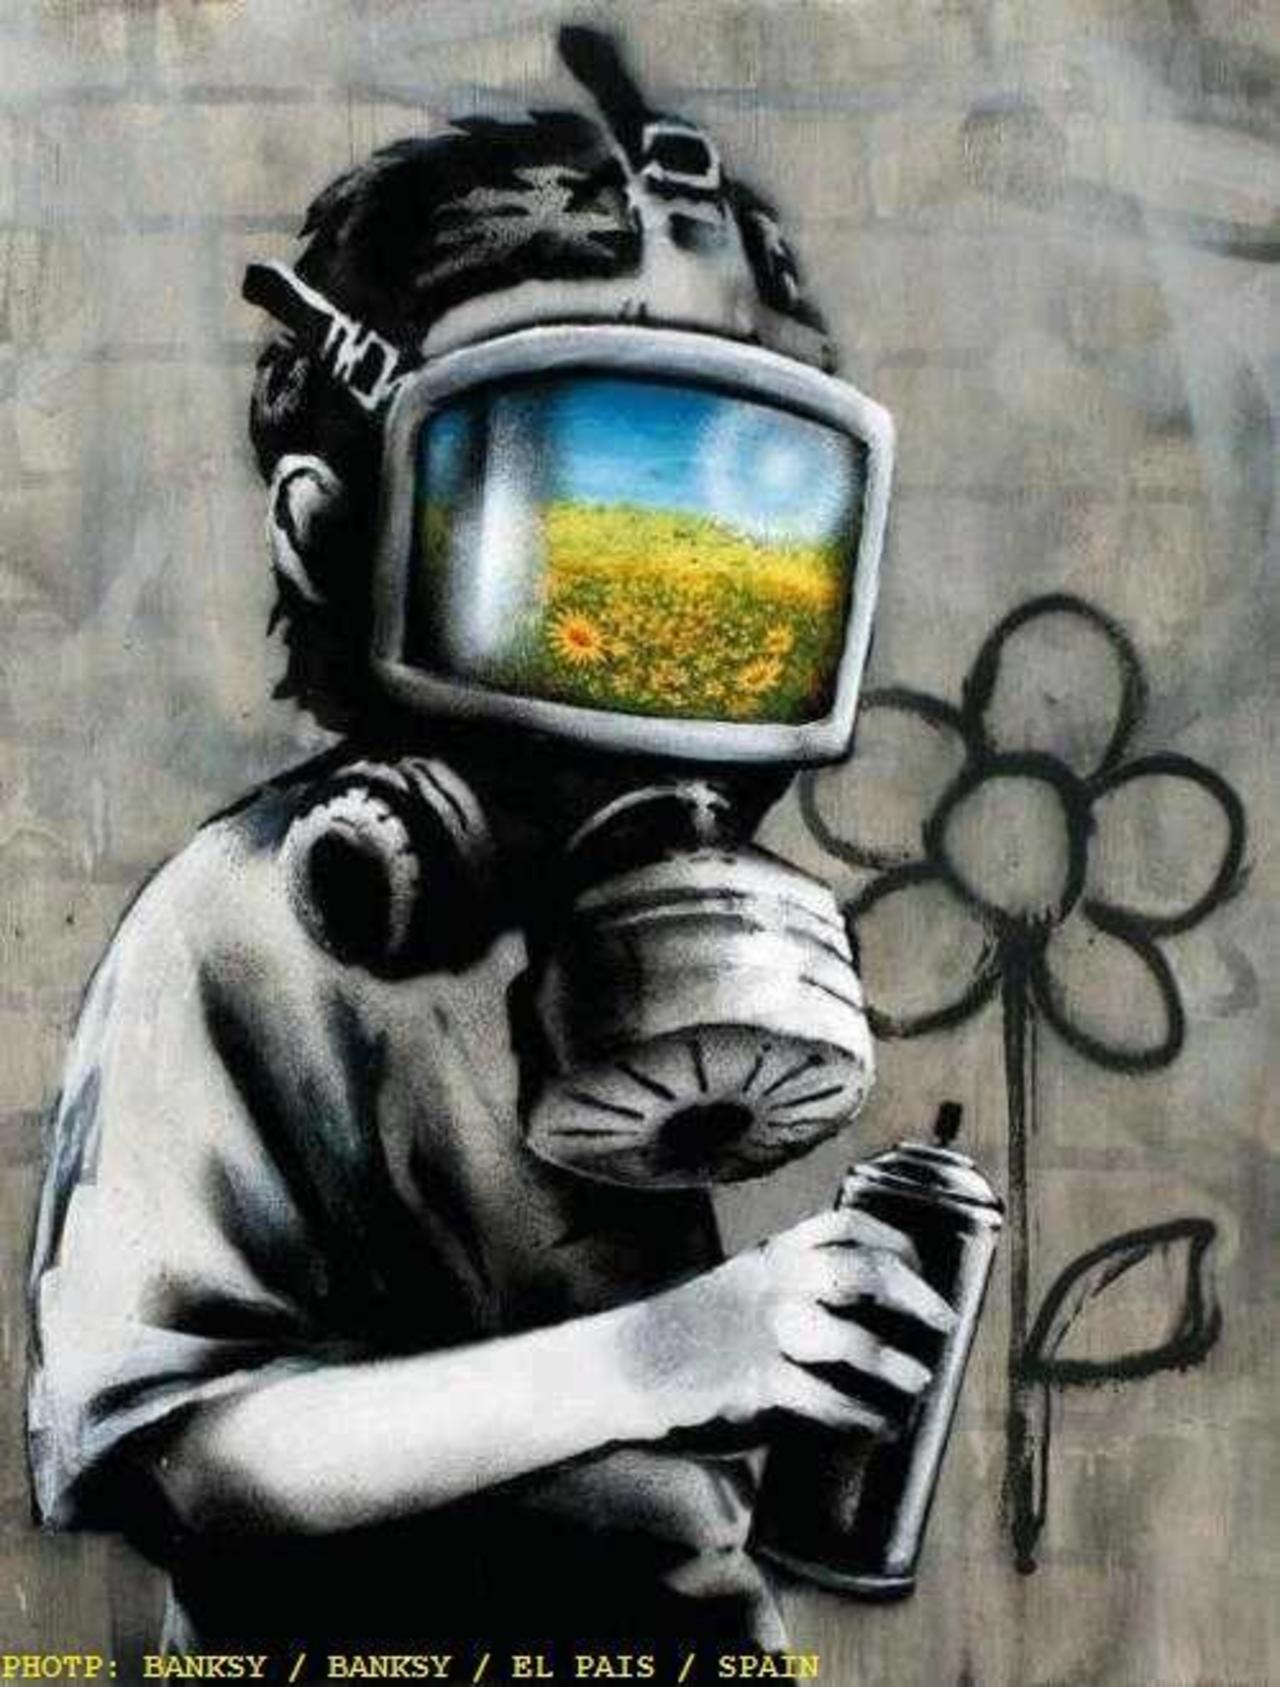 "@lokitone1:  #Art #Graffiti #Banksy “@StreetArtBuzz: Will my children see https://twib.in/l/pr6gEoBdkoE  #urbanart http://t.co/3RGXA5Mp1D”"